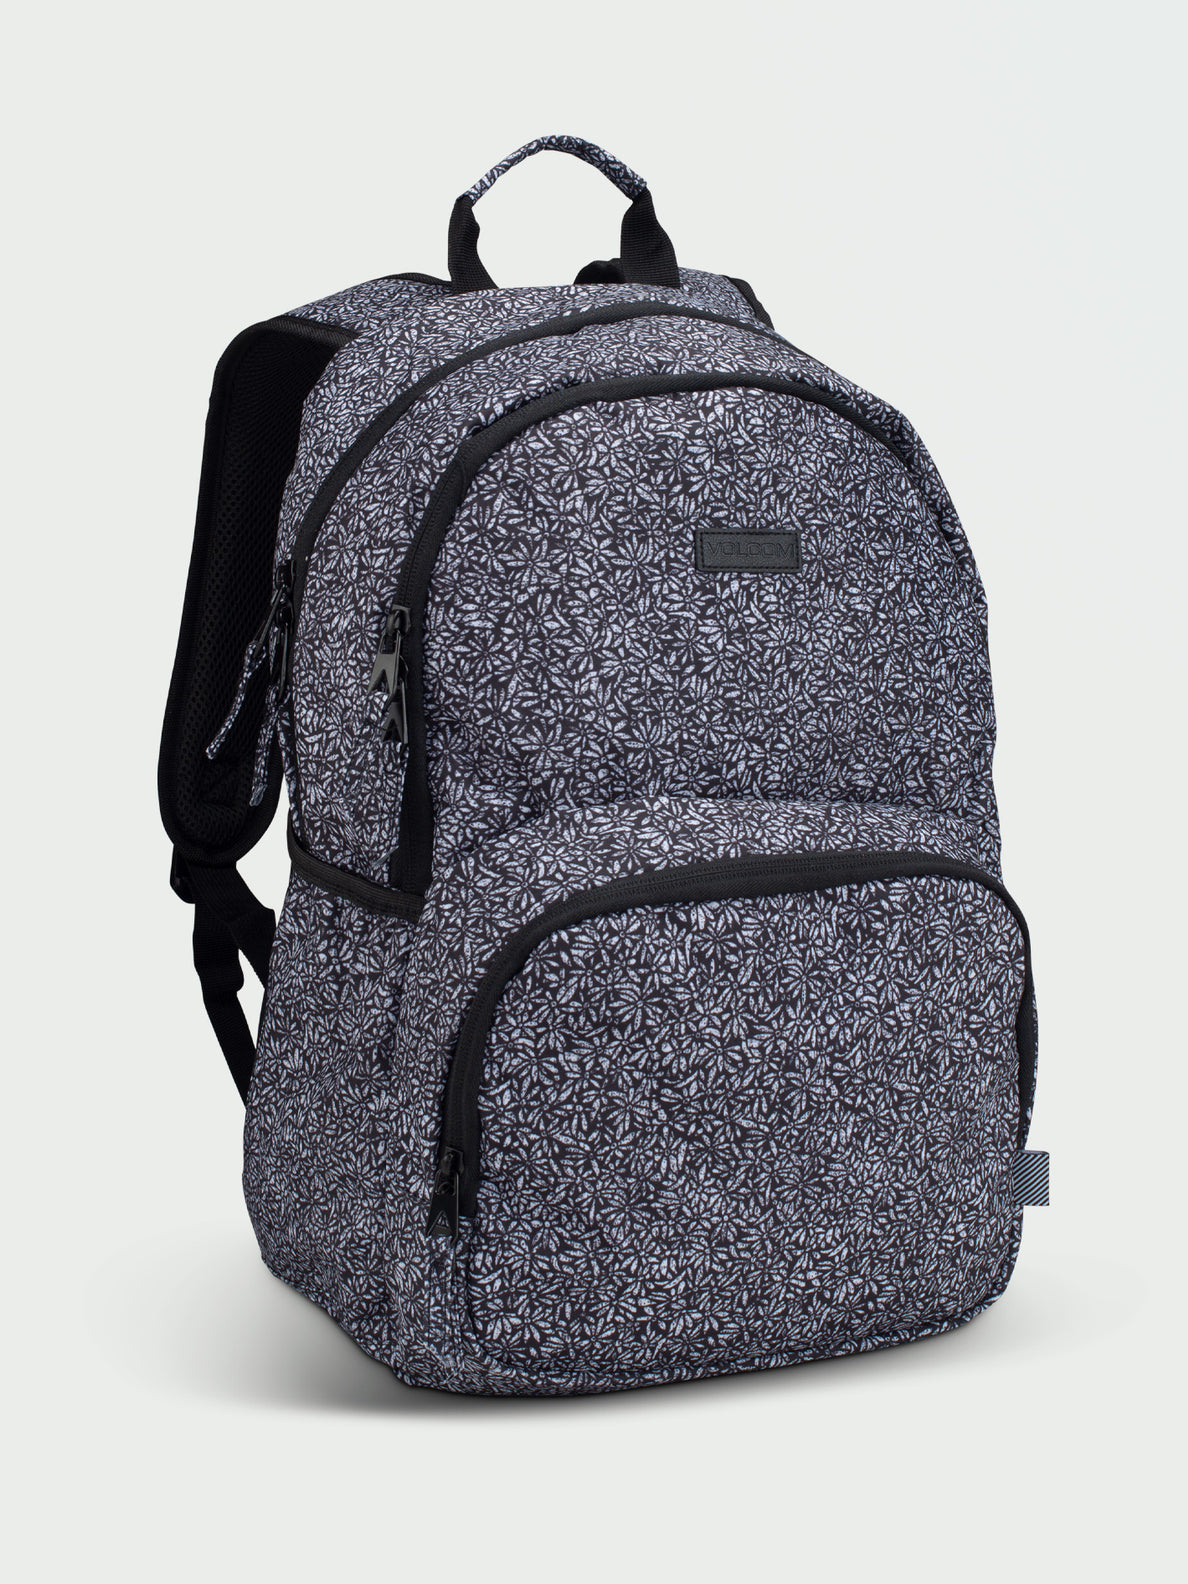 Upperclass Backpack - Black White – Volcom